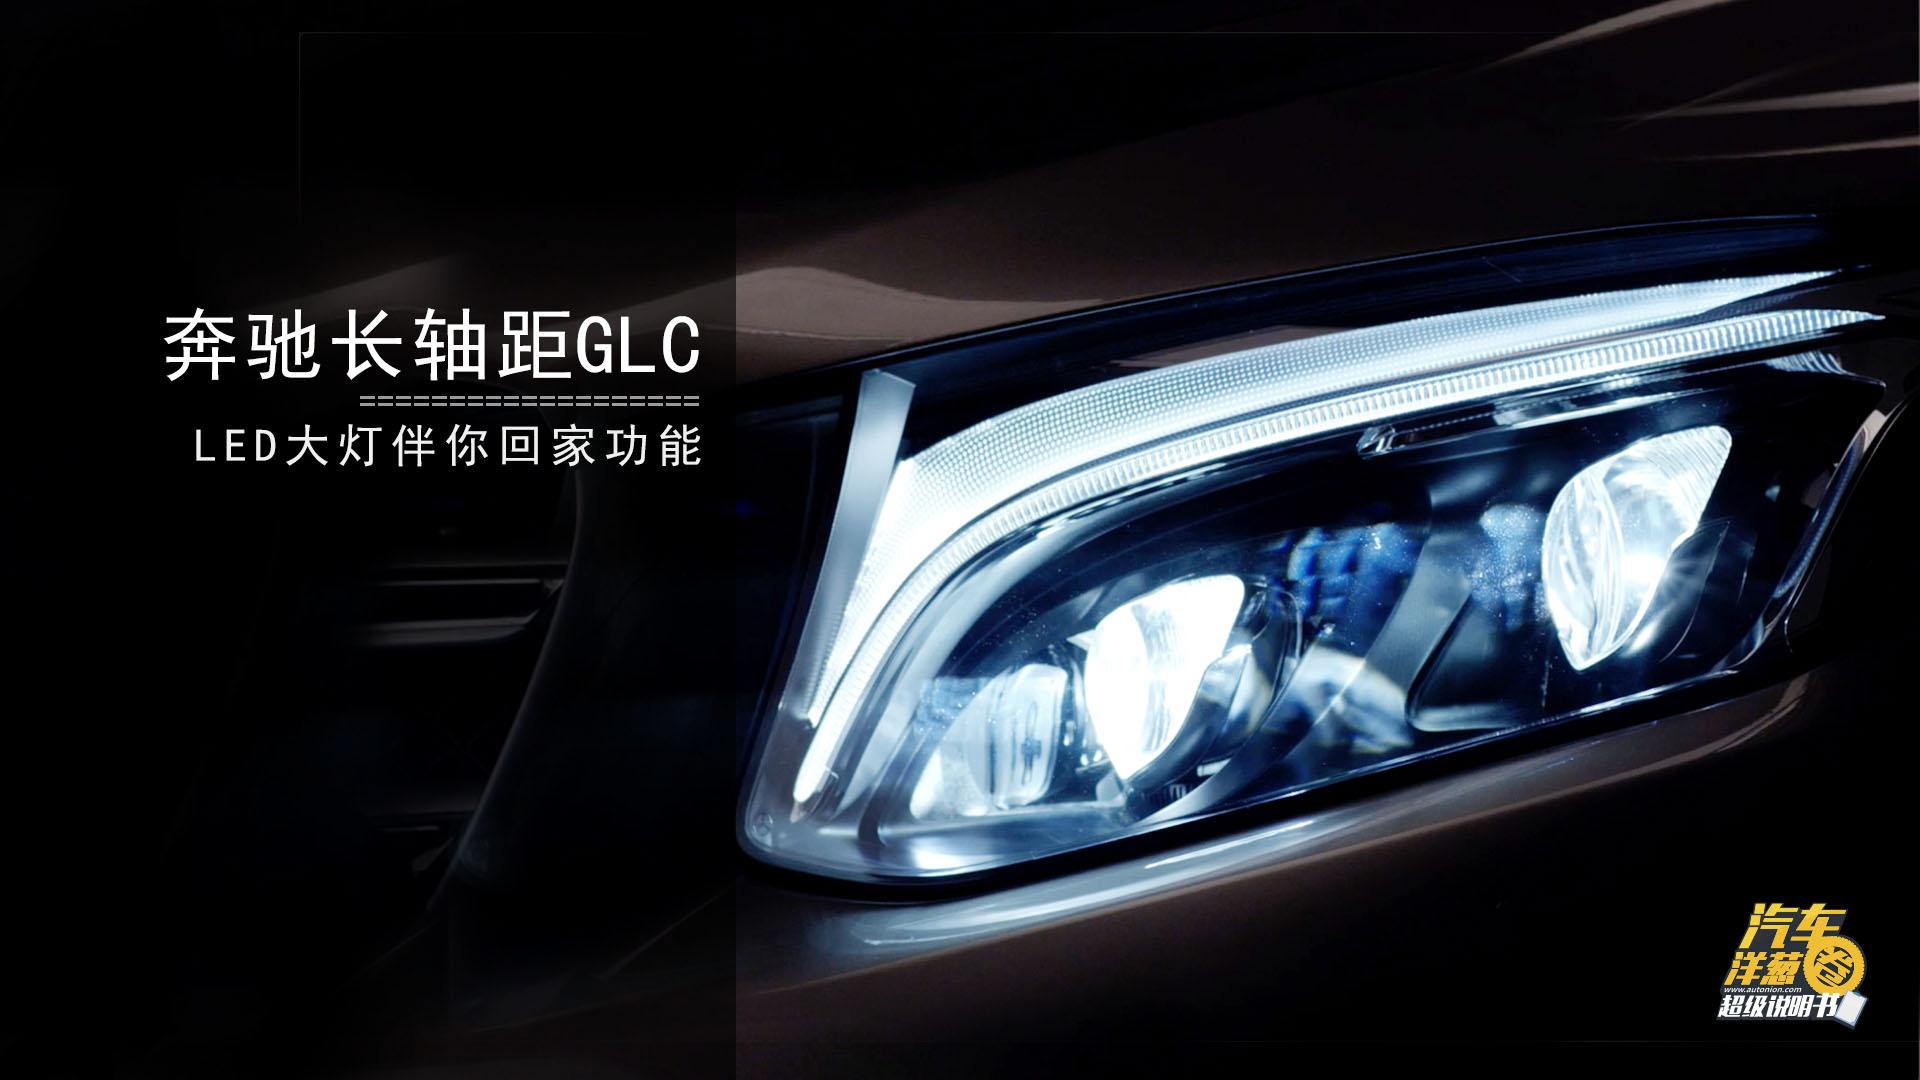 长轴距GLC LED大灯伴你回家功能